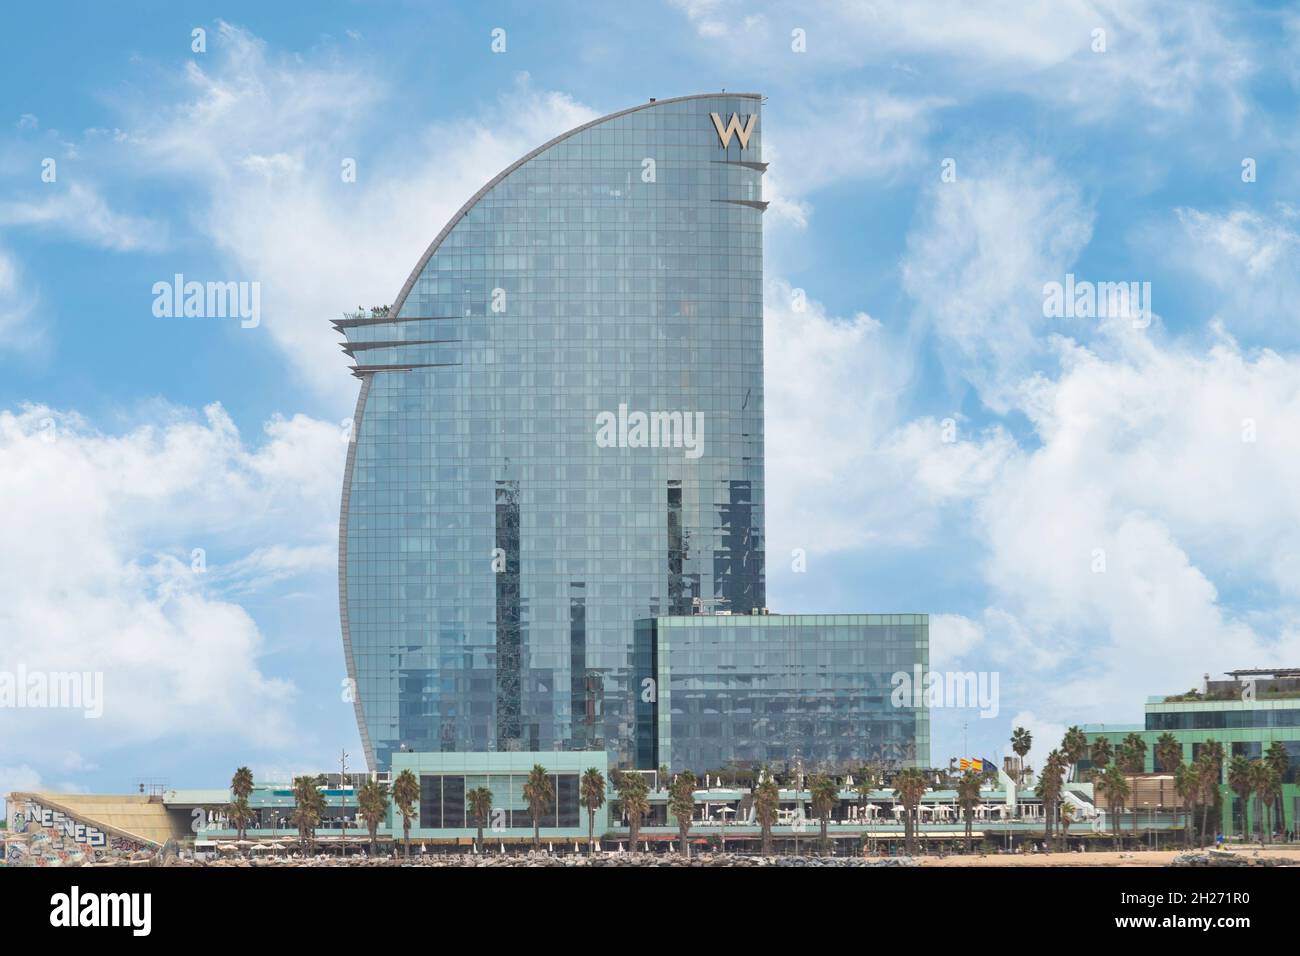 Barcelona, Spanien - 24. September 2021: Das W Barcelona Hotel, auch bekannt als Hotel Vela, ist ein 98.8 m hohes Gebäude, das vom spanischen Architekten Ri entworfen wurde Stockfoto